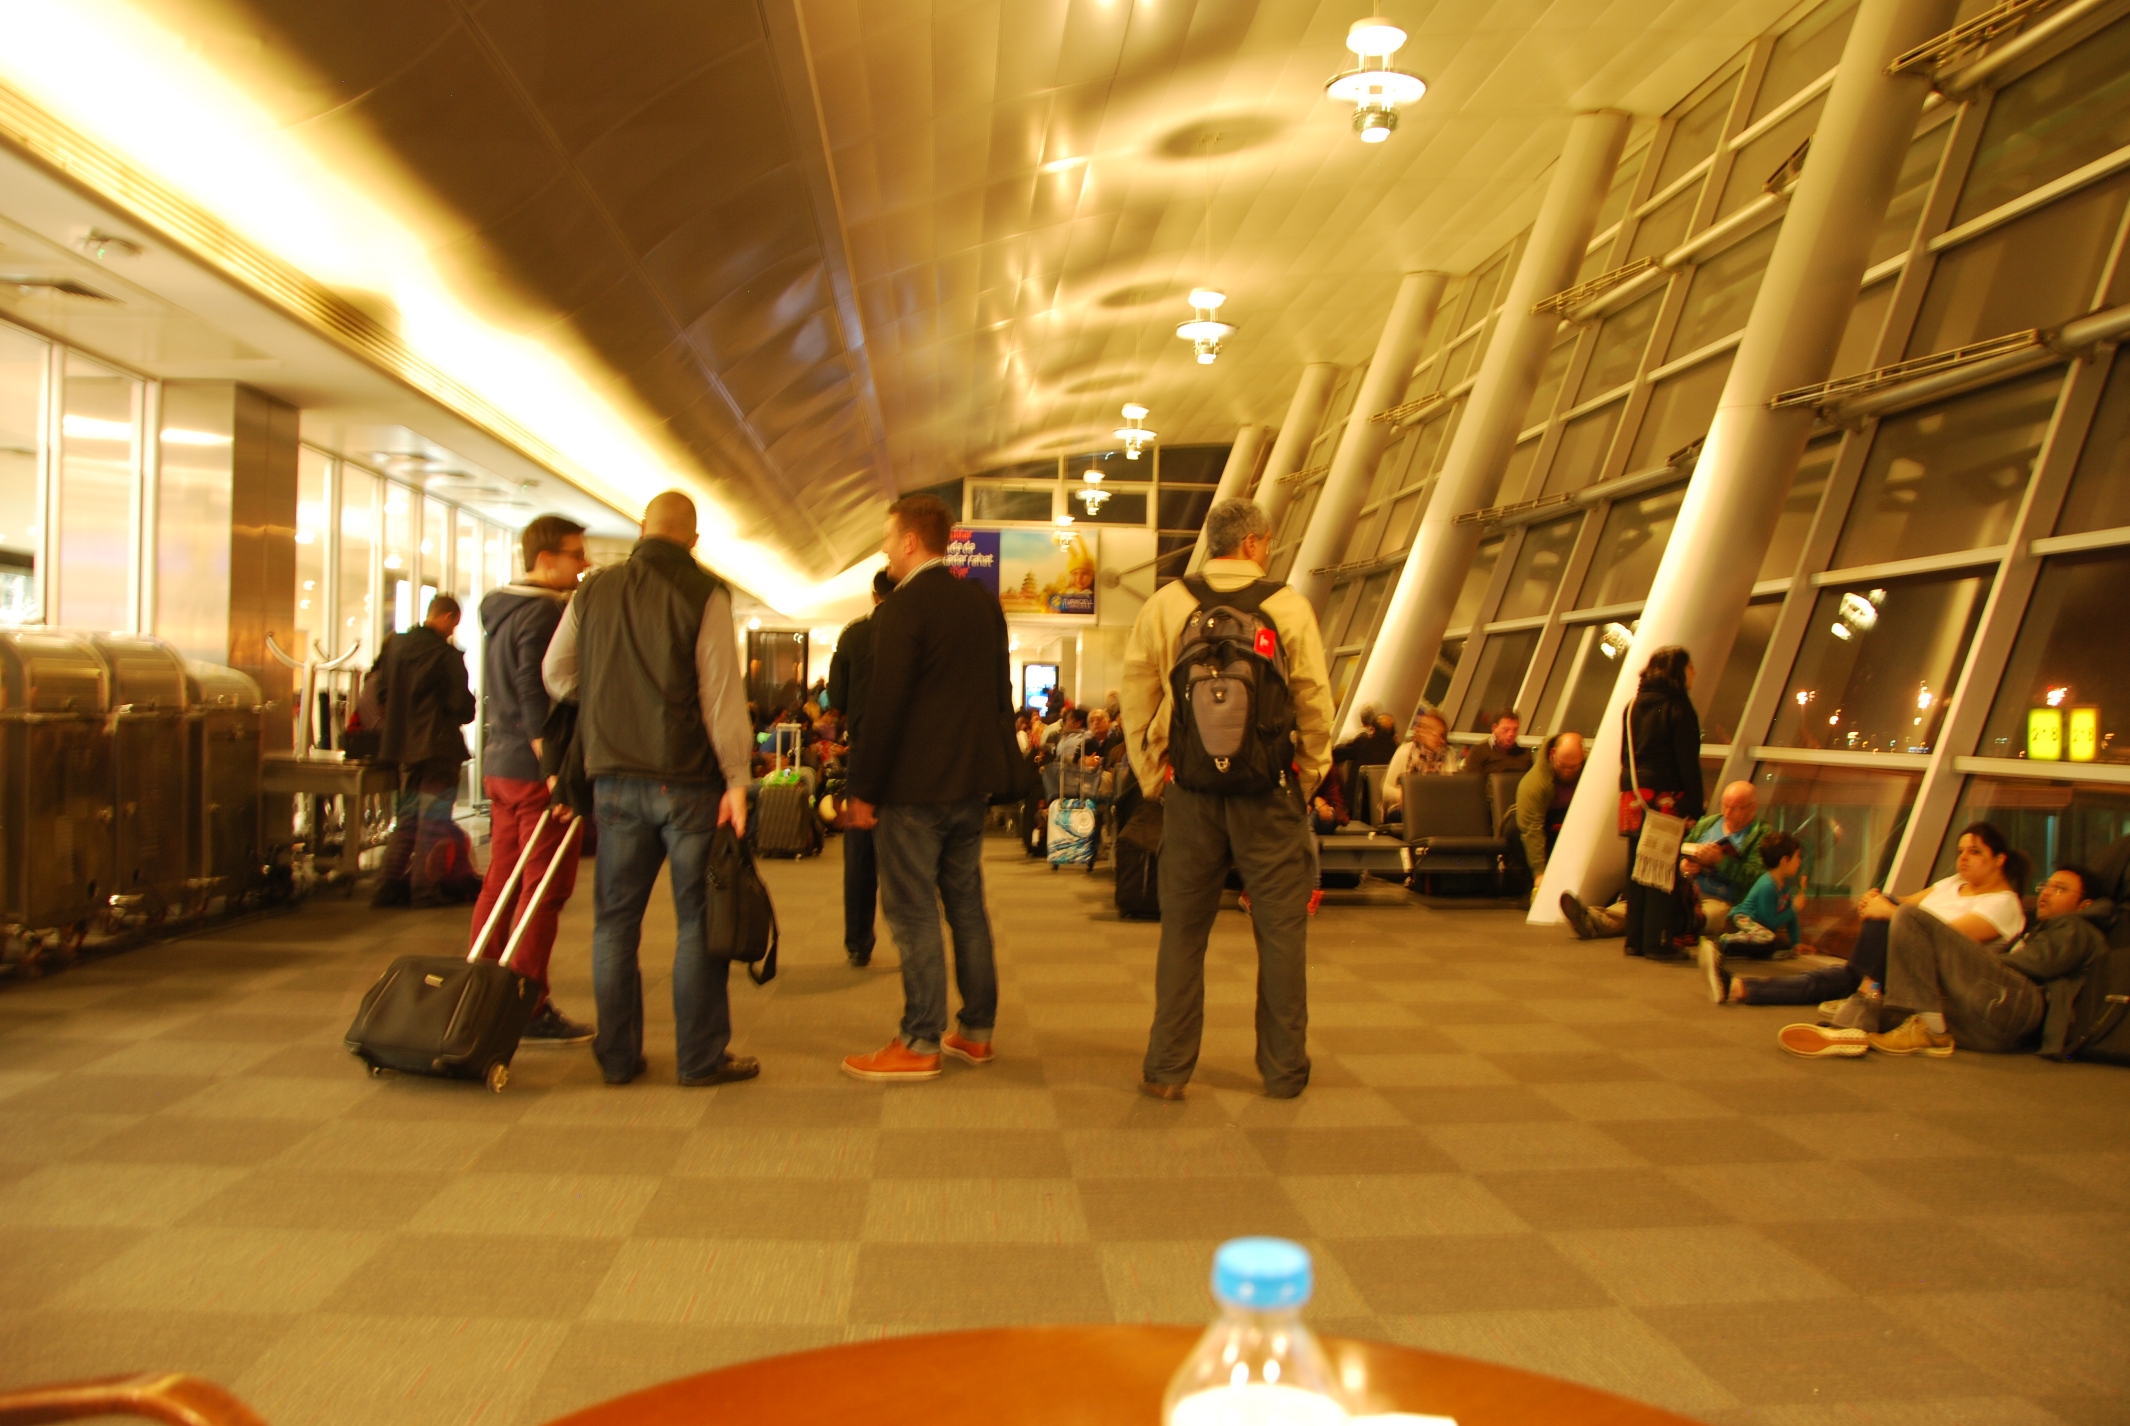 İstanbul Atatürk Havalimanı - Boarding Gate